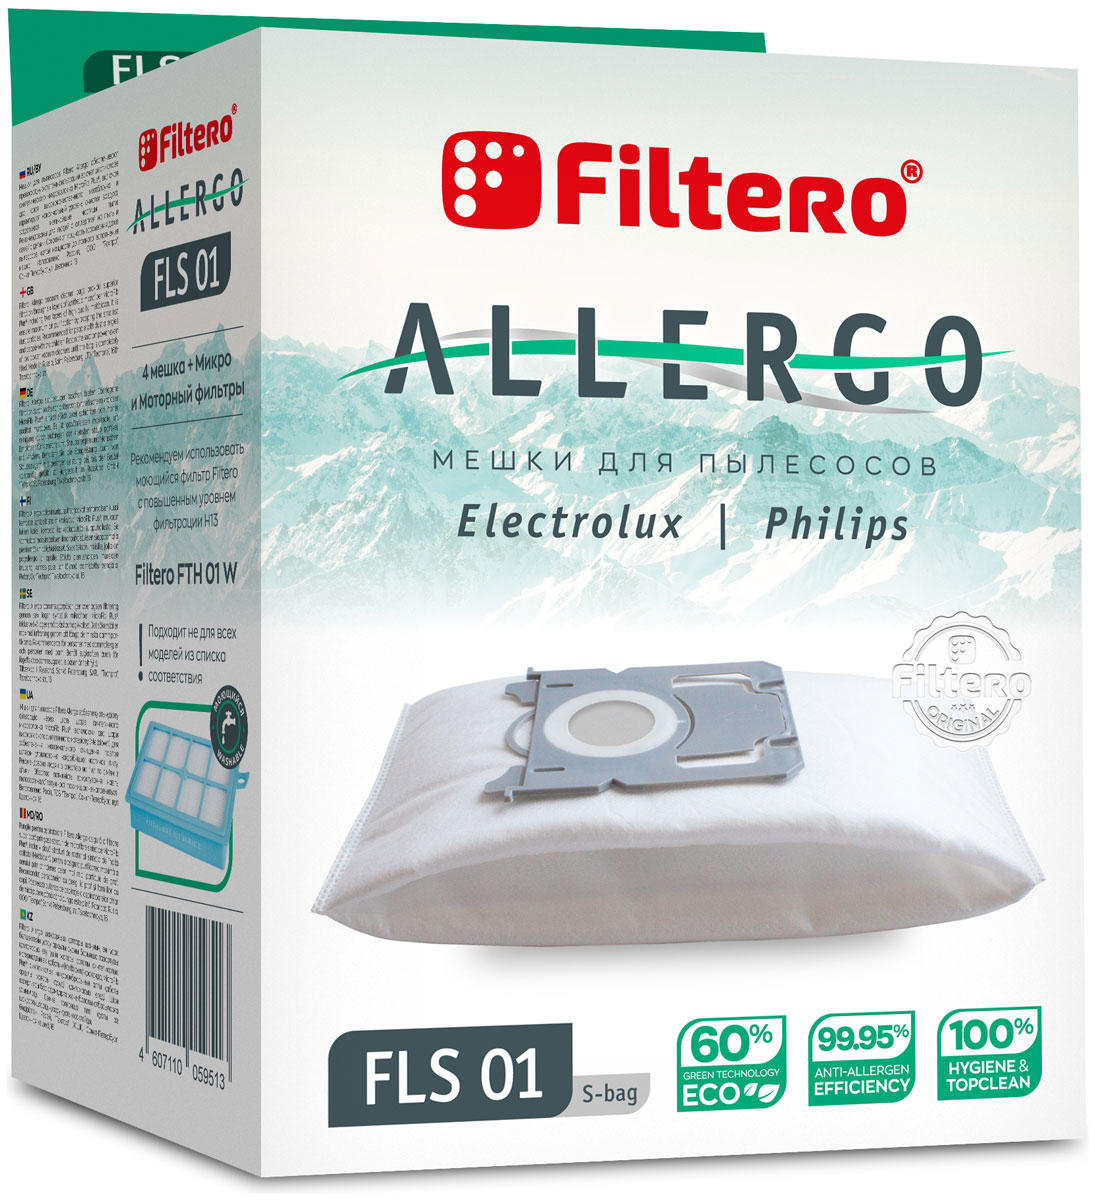 Пылесборники Filtero FLS 01 S-bag Allergo 4 шт. + моторный фильтр и микрофильтр пылесборники filtero mie 04 allergo 4шт моторный фильтр и микрофильтр